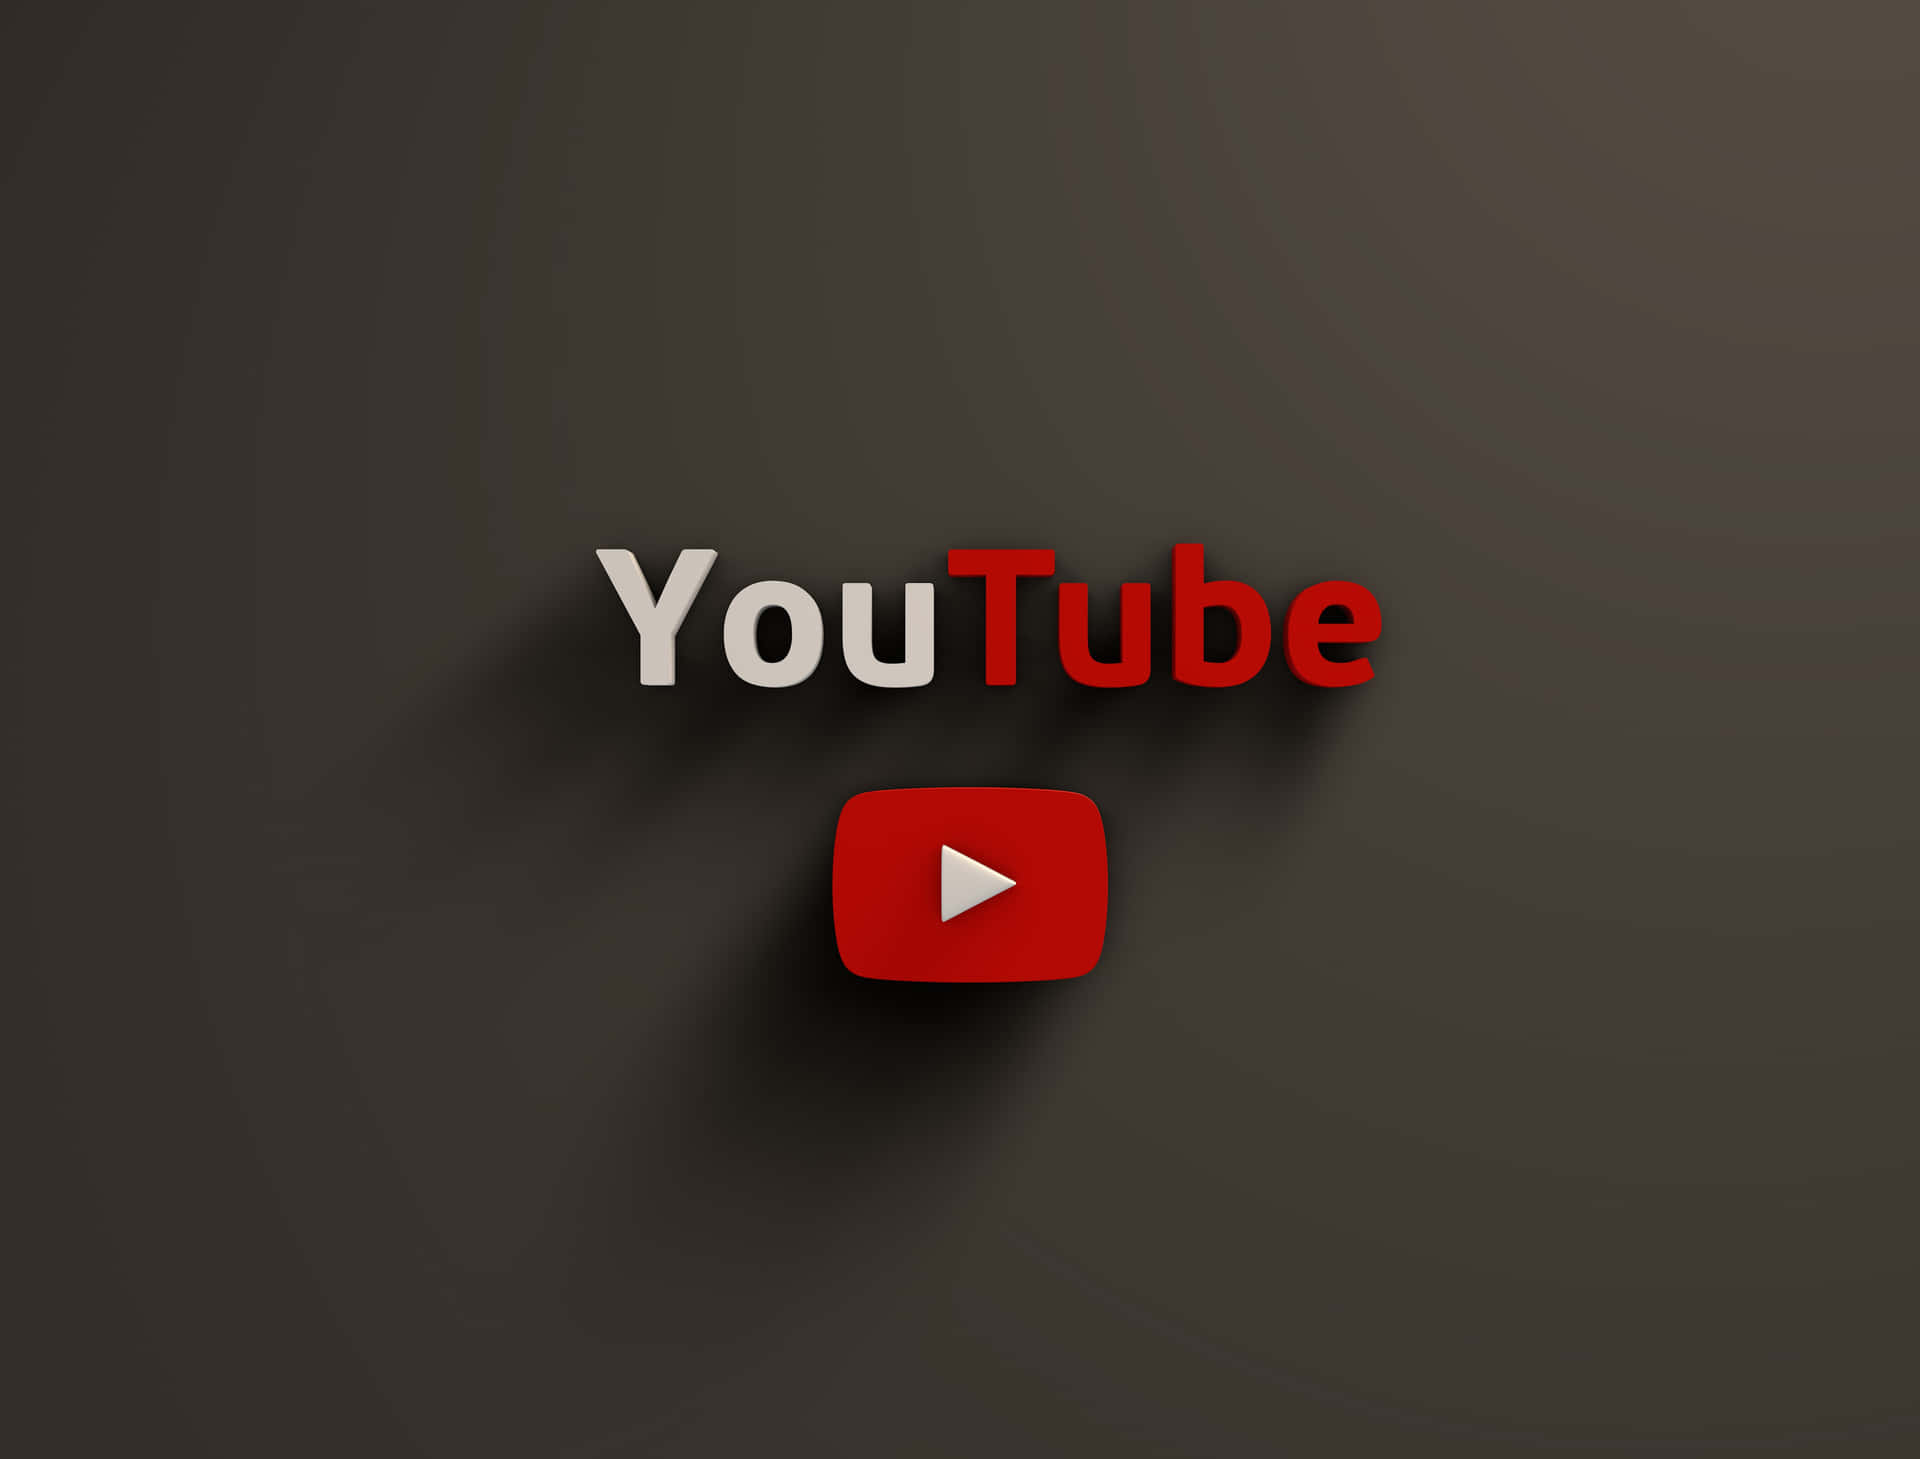 100+] Youtube Logo Black Background s 